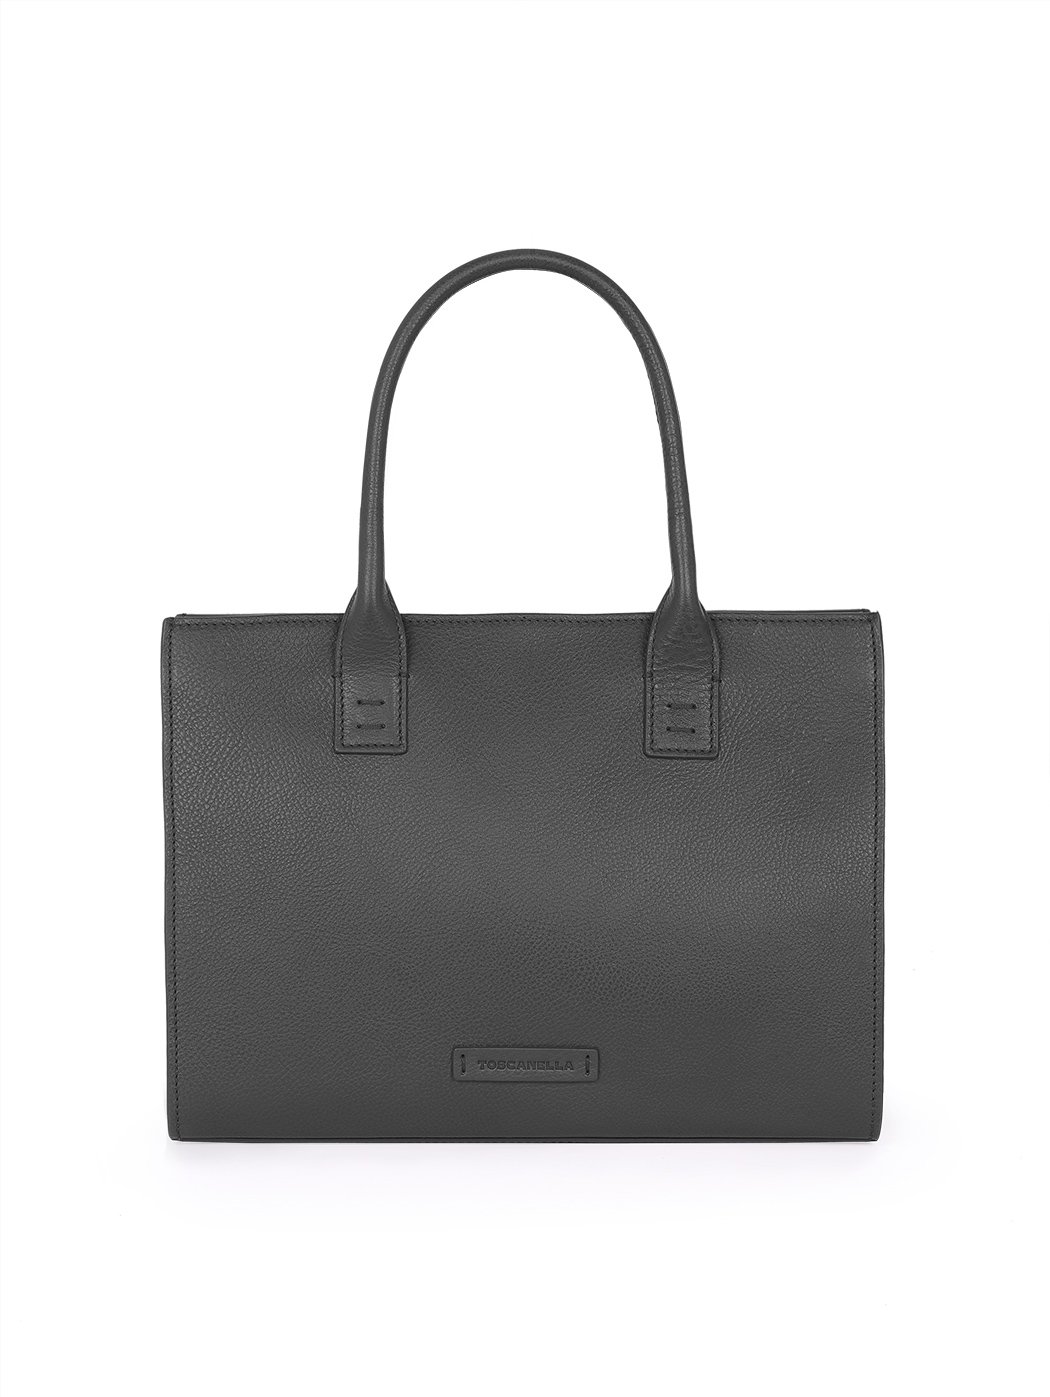 Black handbag with shoulder strap